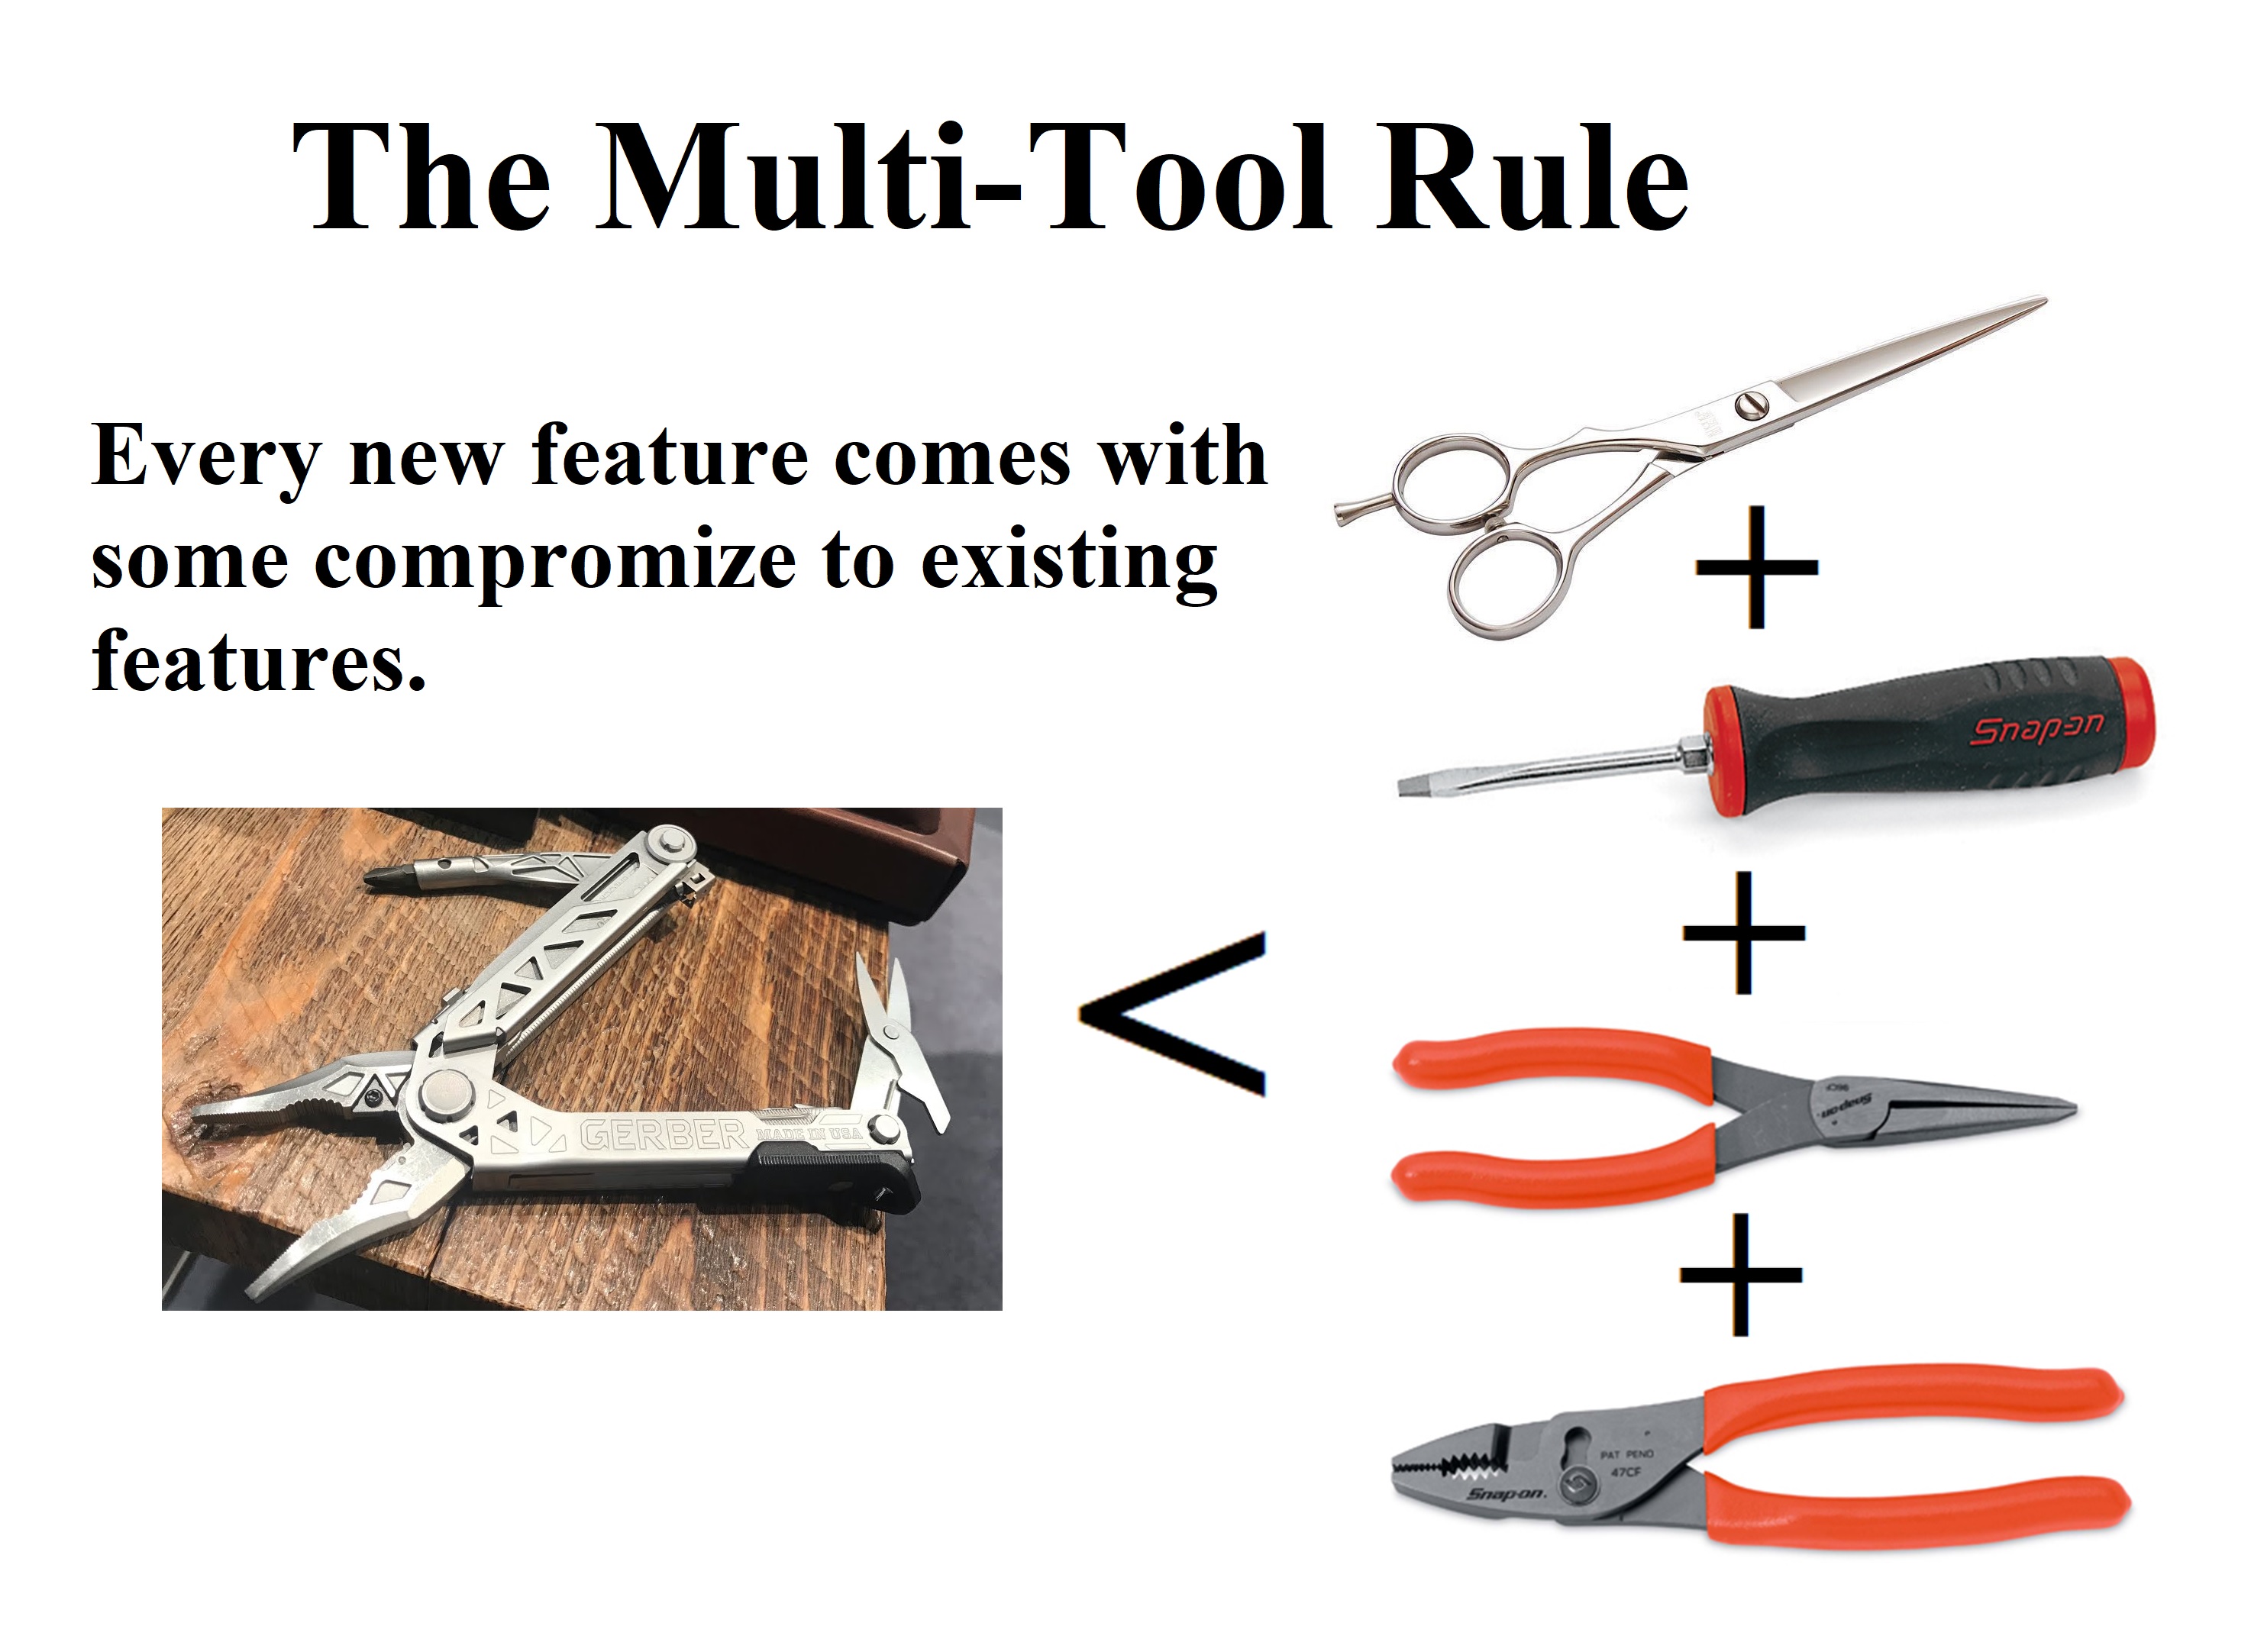 The multi-tool Rule